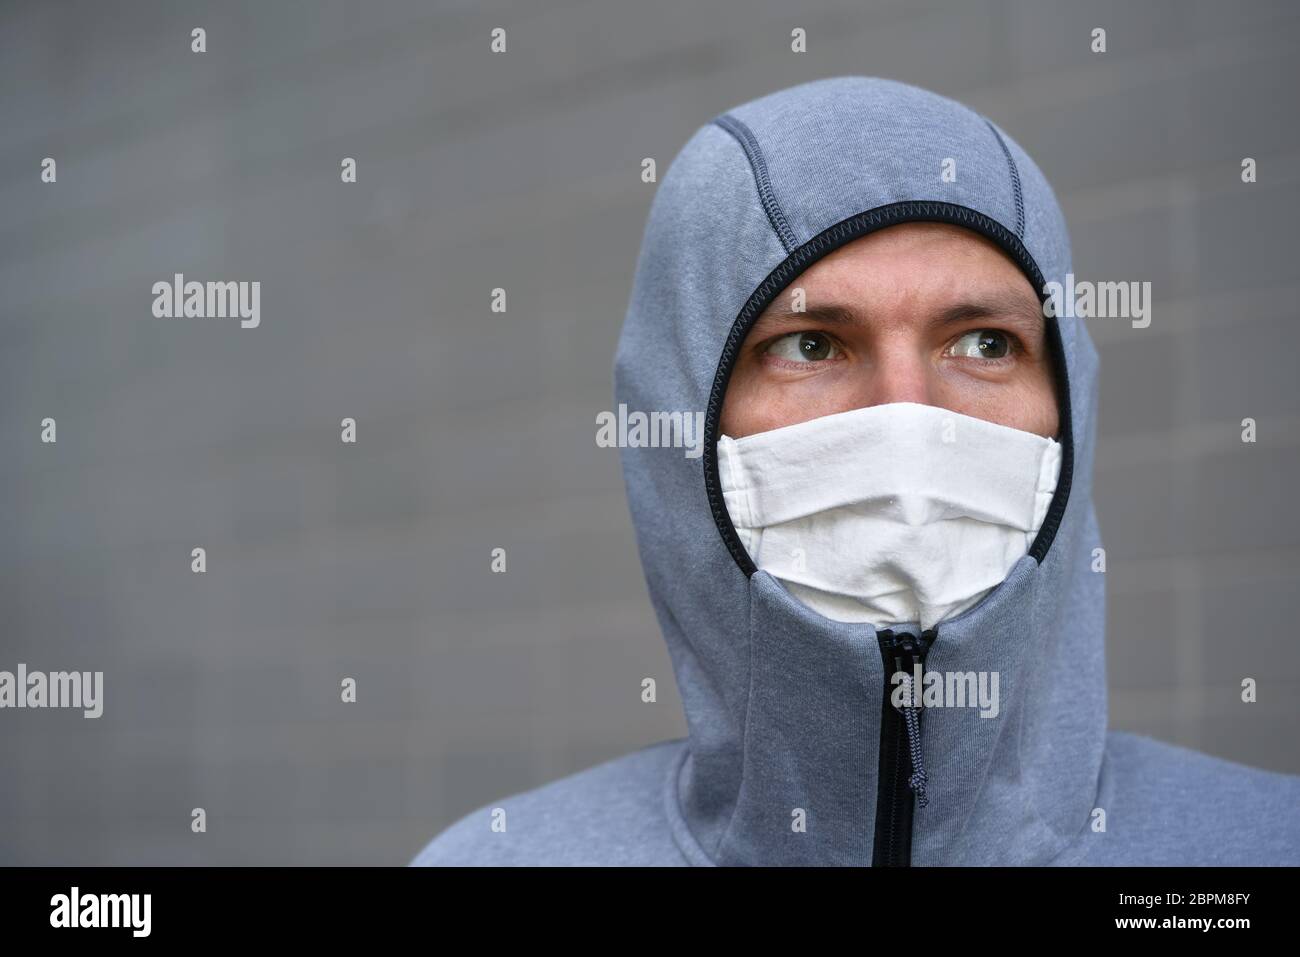 Portrait du jeune homme en sweat à capuche gris zippé et en coton fait maison visage bouche virus masque, seulement les yeux visibles, mur gris en arrière-plan. Coronavirus covid- Banque D'Images